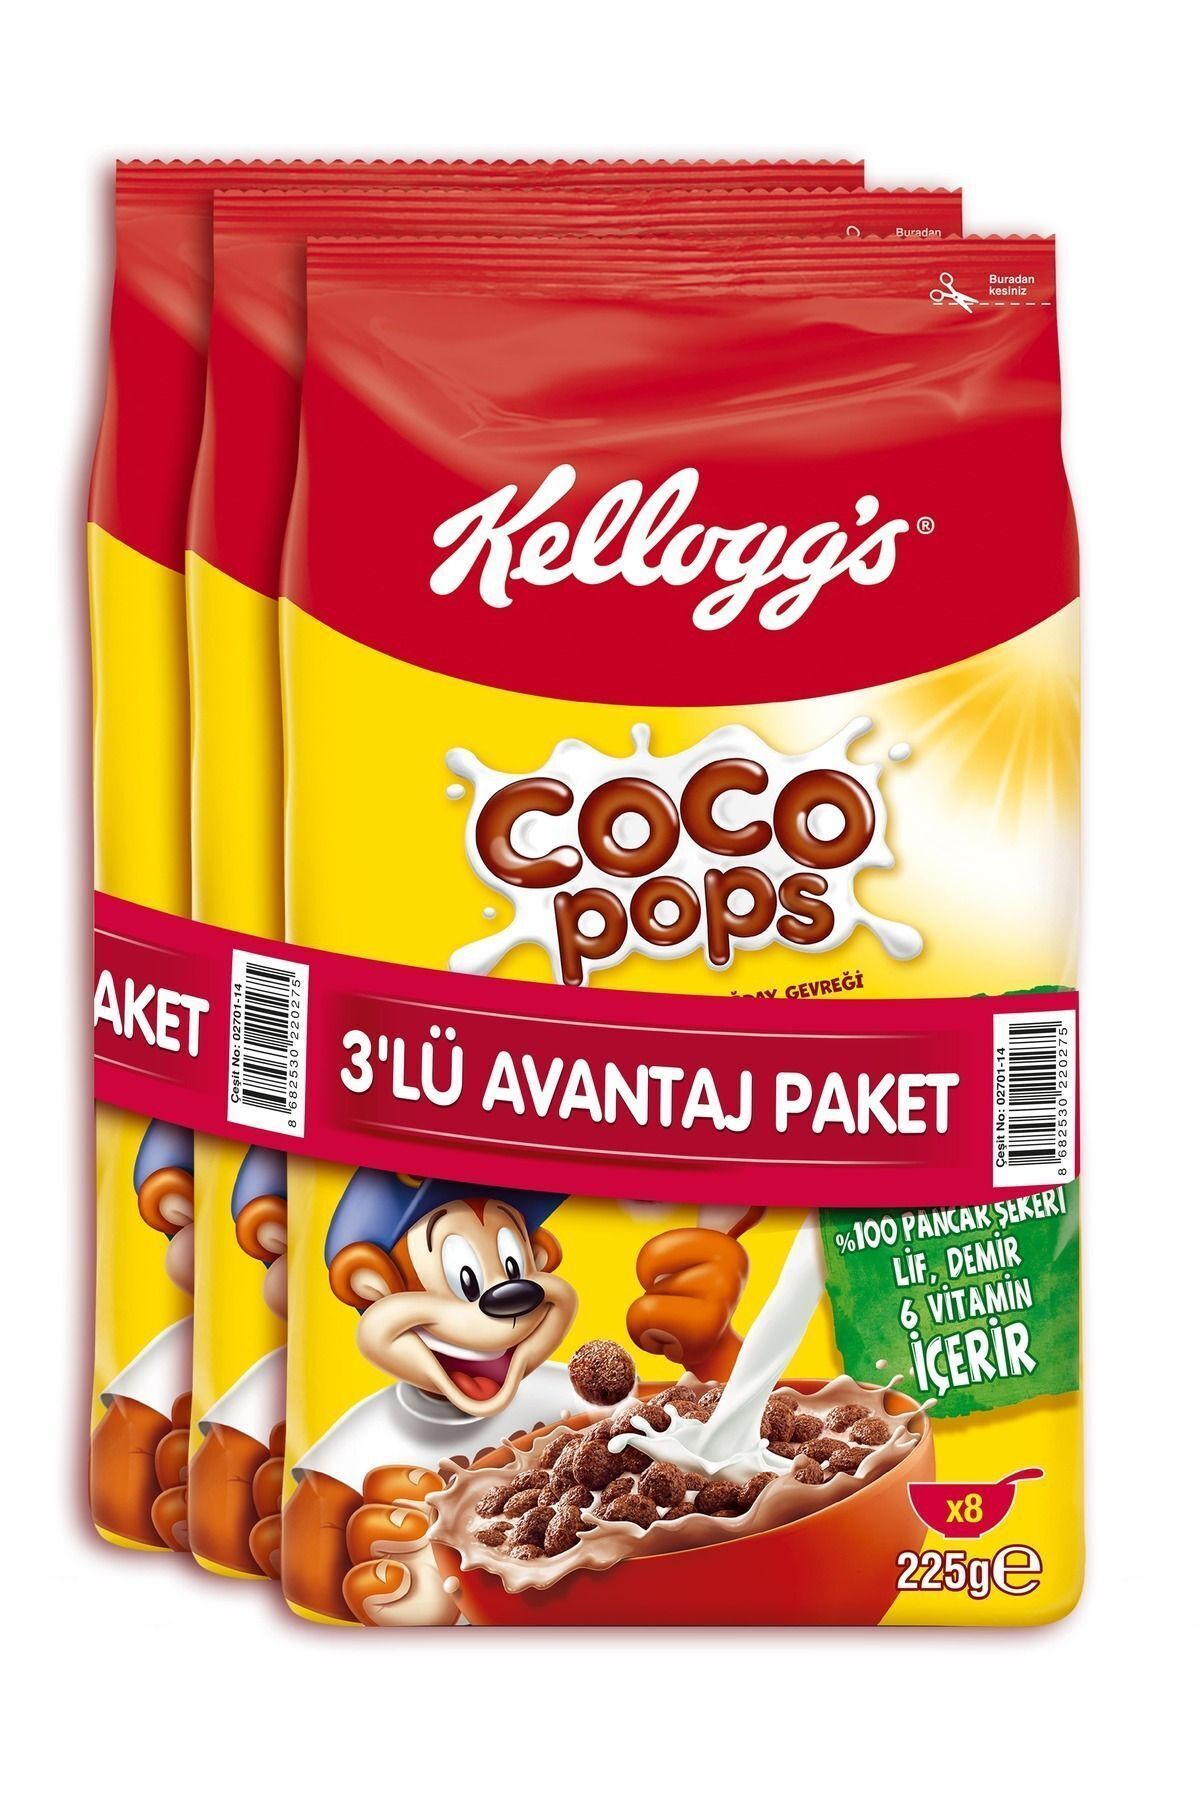 Kellogg's Coco Pops Çikolatalı Buğday Ve Mısır Gevreği 225gr X 3 Adet, Lif Kaynağı, Demir Ve 6 Vitamin